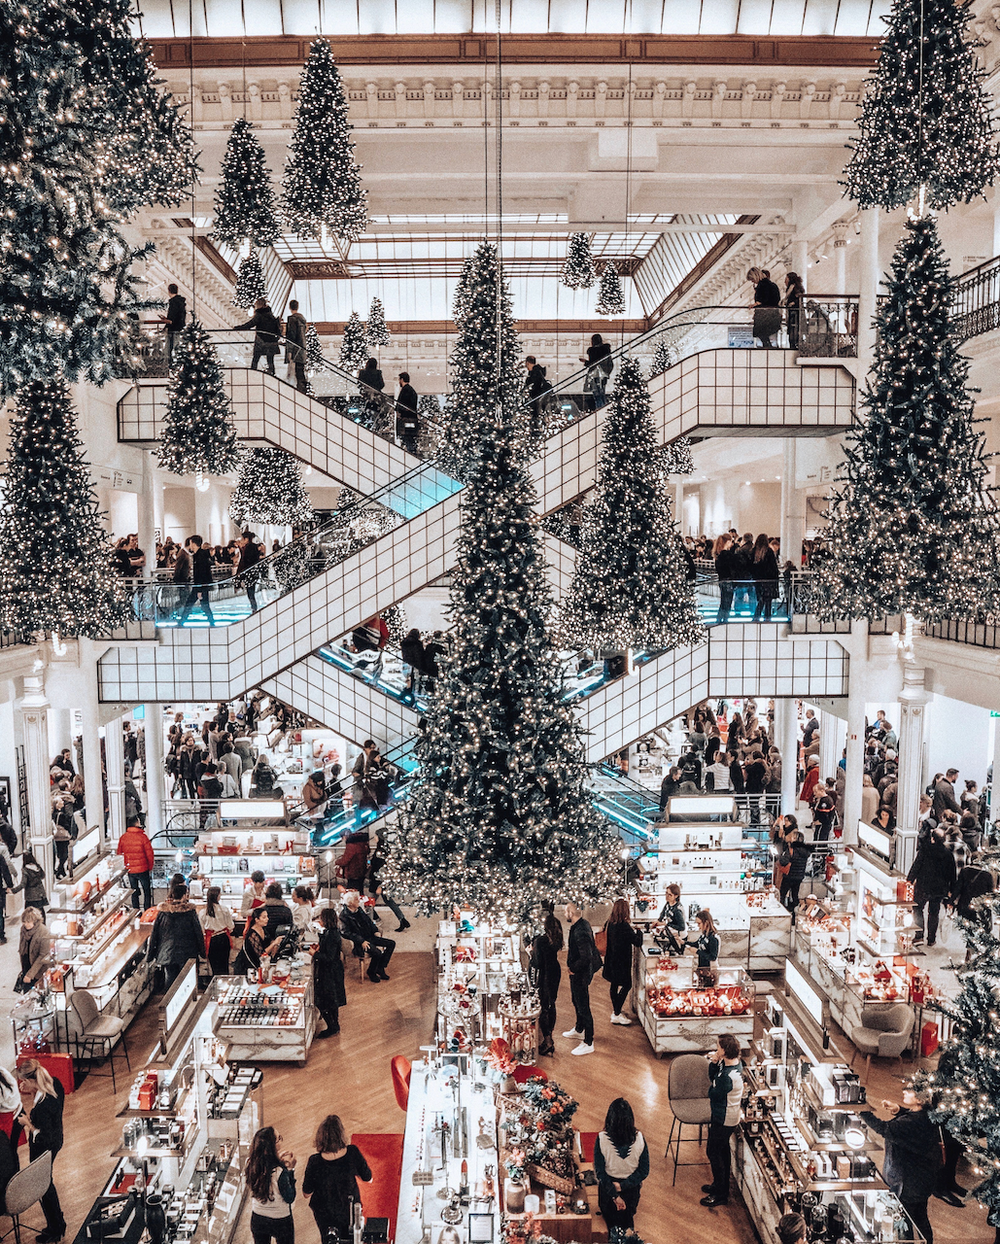 Le Bon Marche Department Store during Christmas - Paris - France